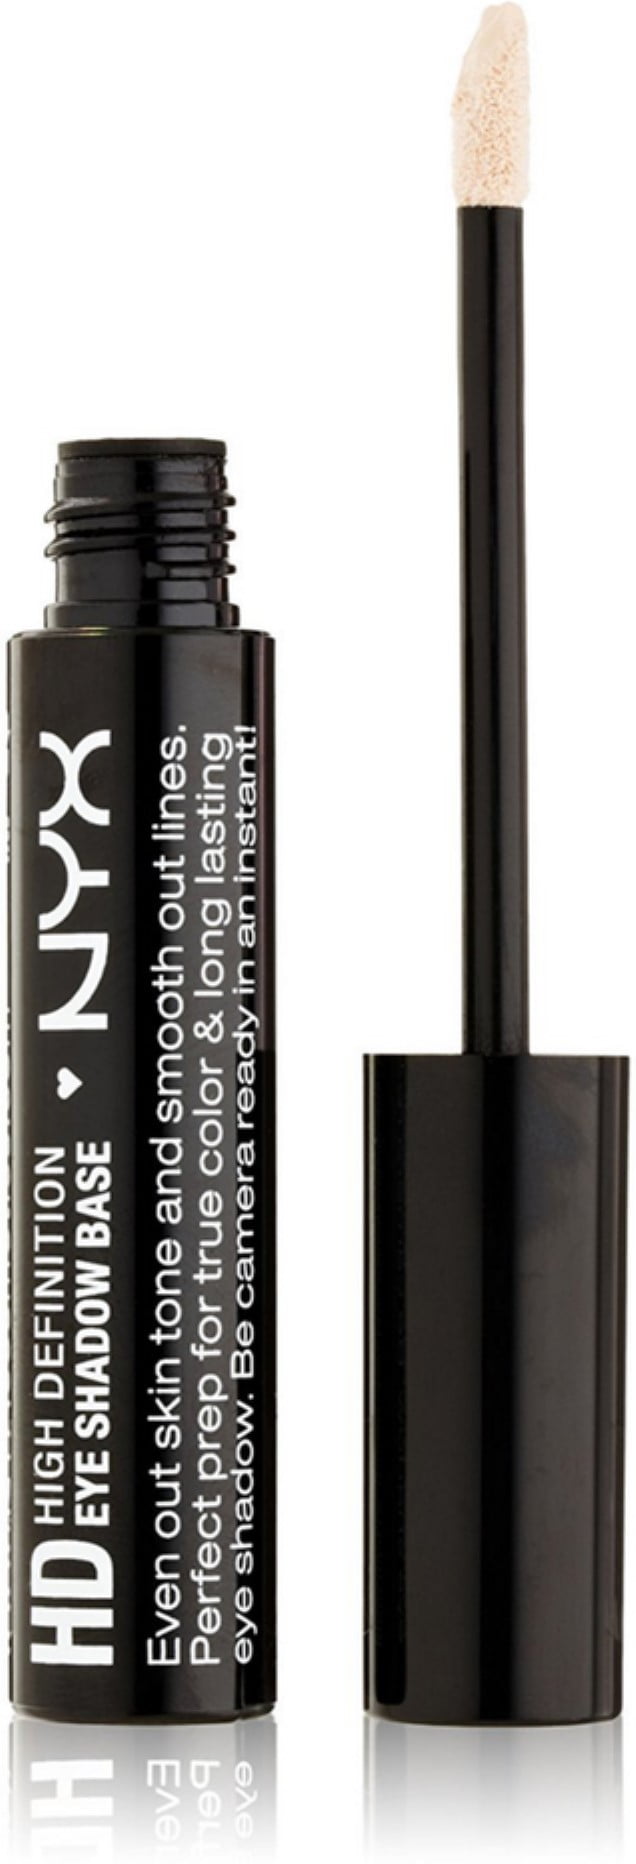 NYX Cosmetics Eye Shadow Base, High Definition oz 0.28